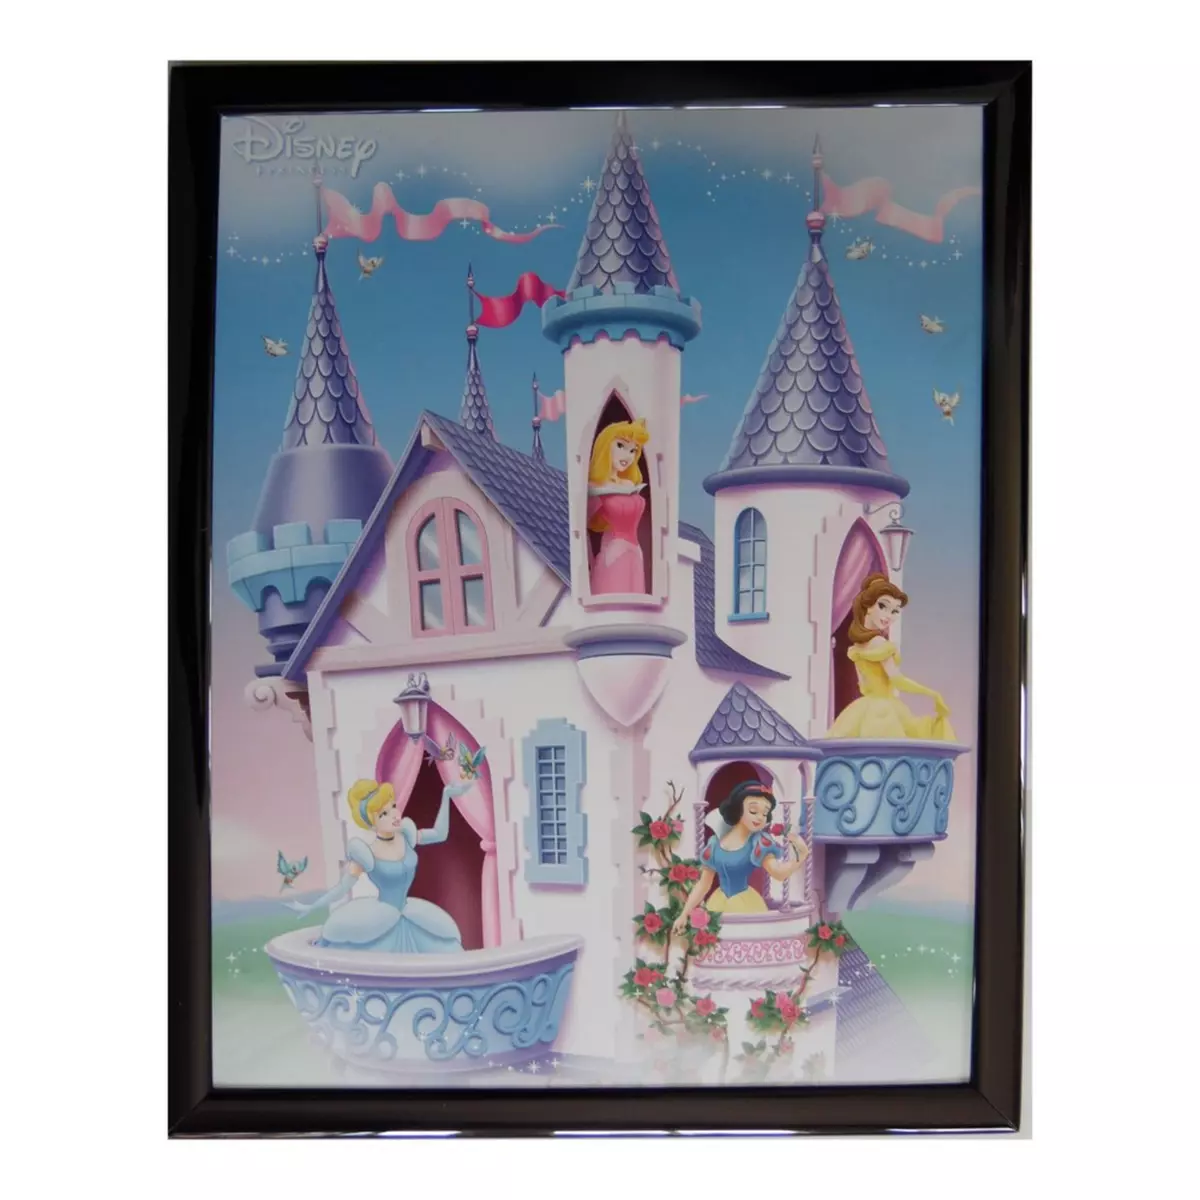  Tableau Princesse 20 x 25 cm Disney cadre enfant fille